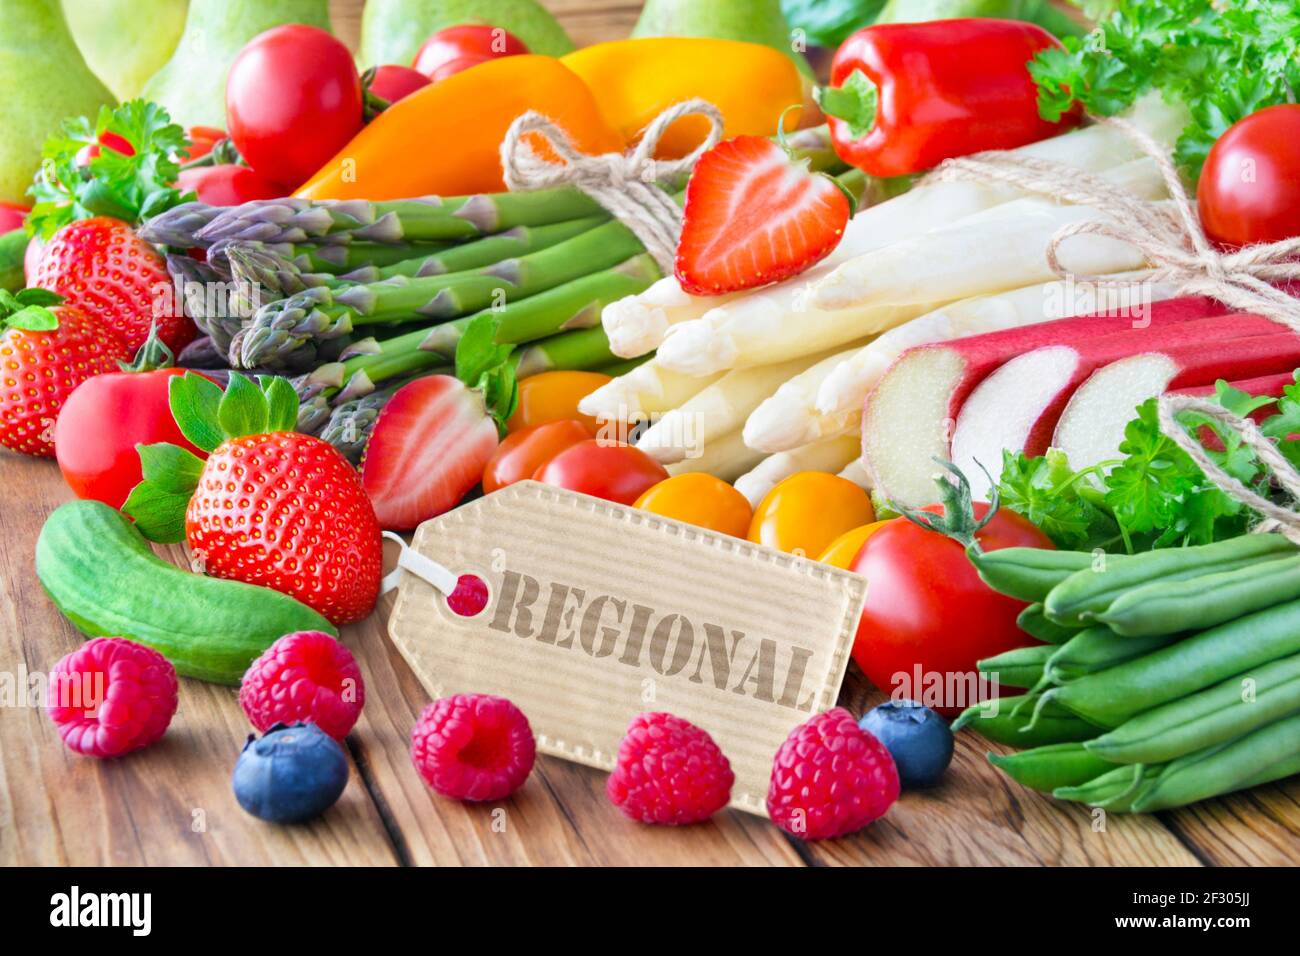 Obst und Gemüse mit Label auf Holz Stock Photo